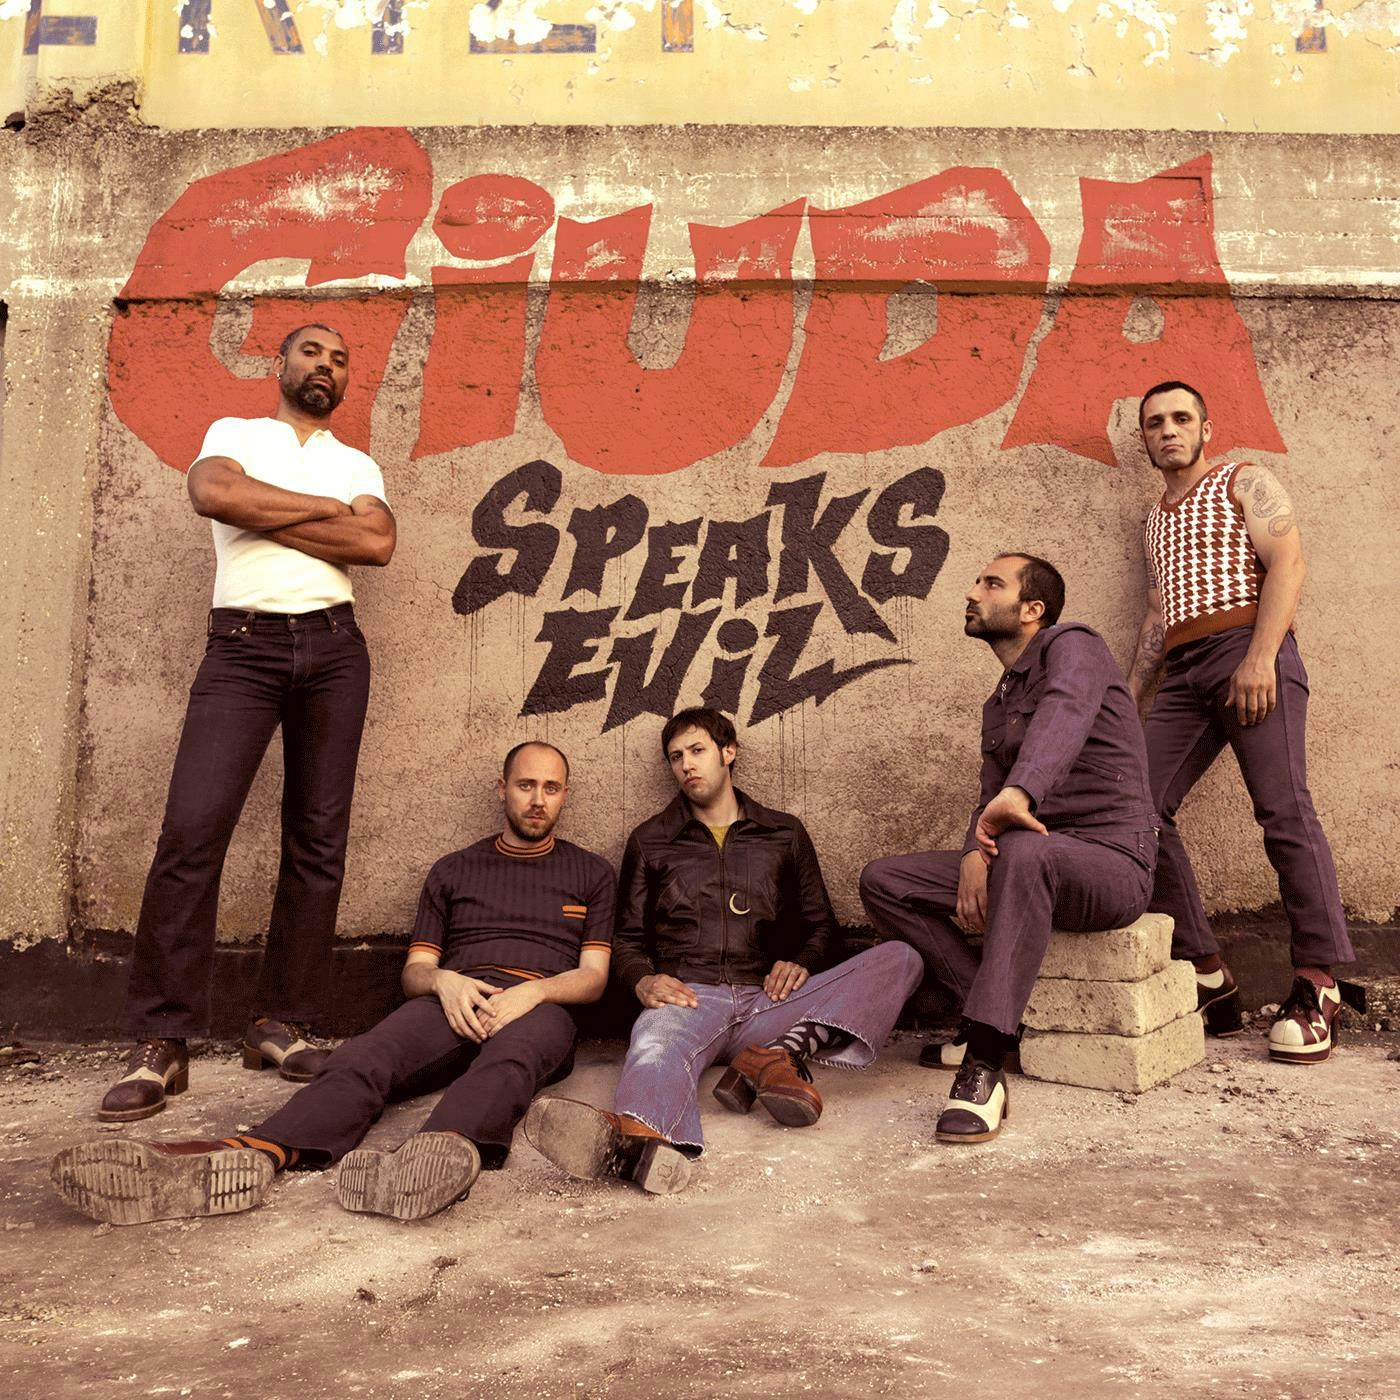 Giuda Speaks Evil Vinyl Record